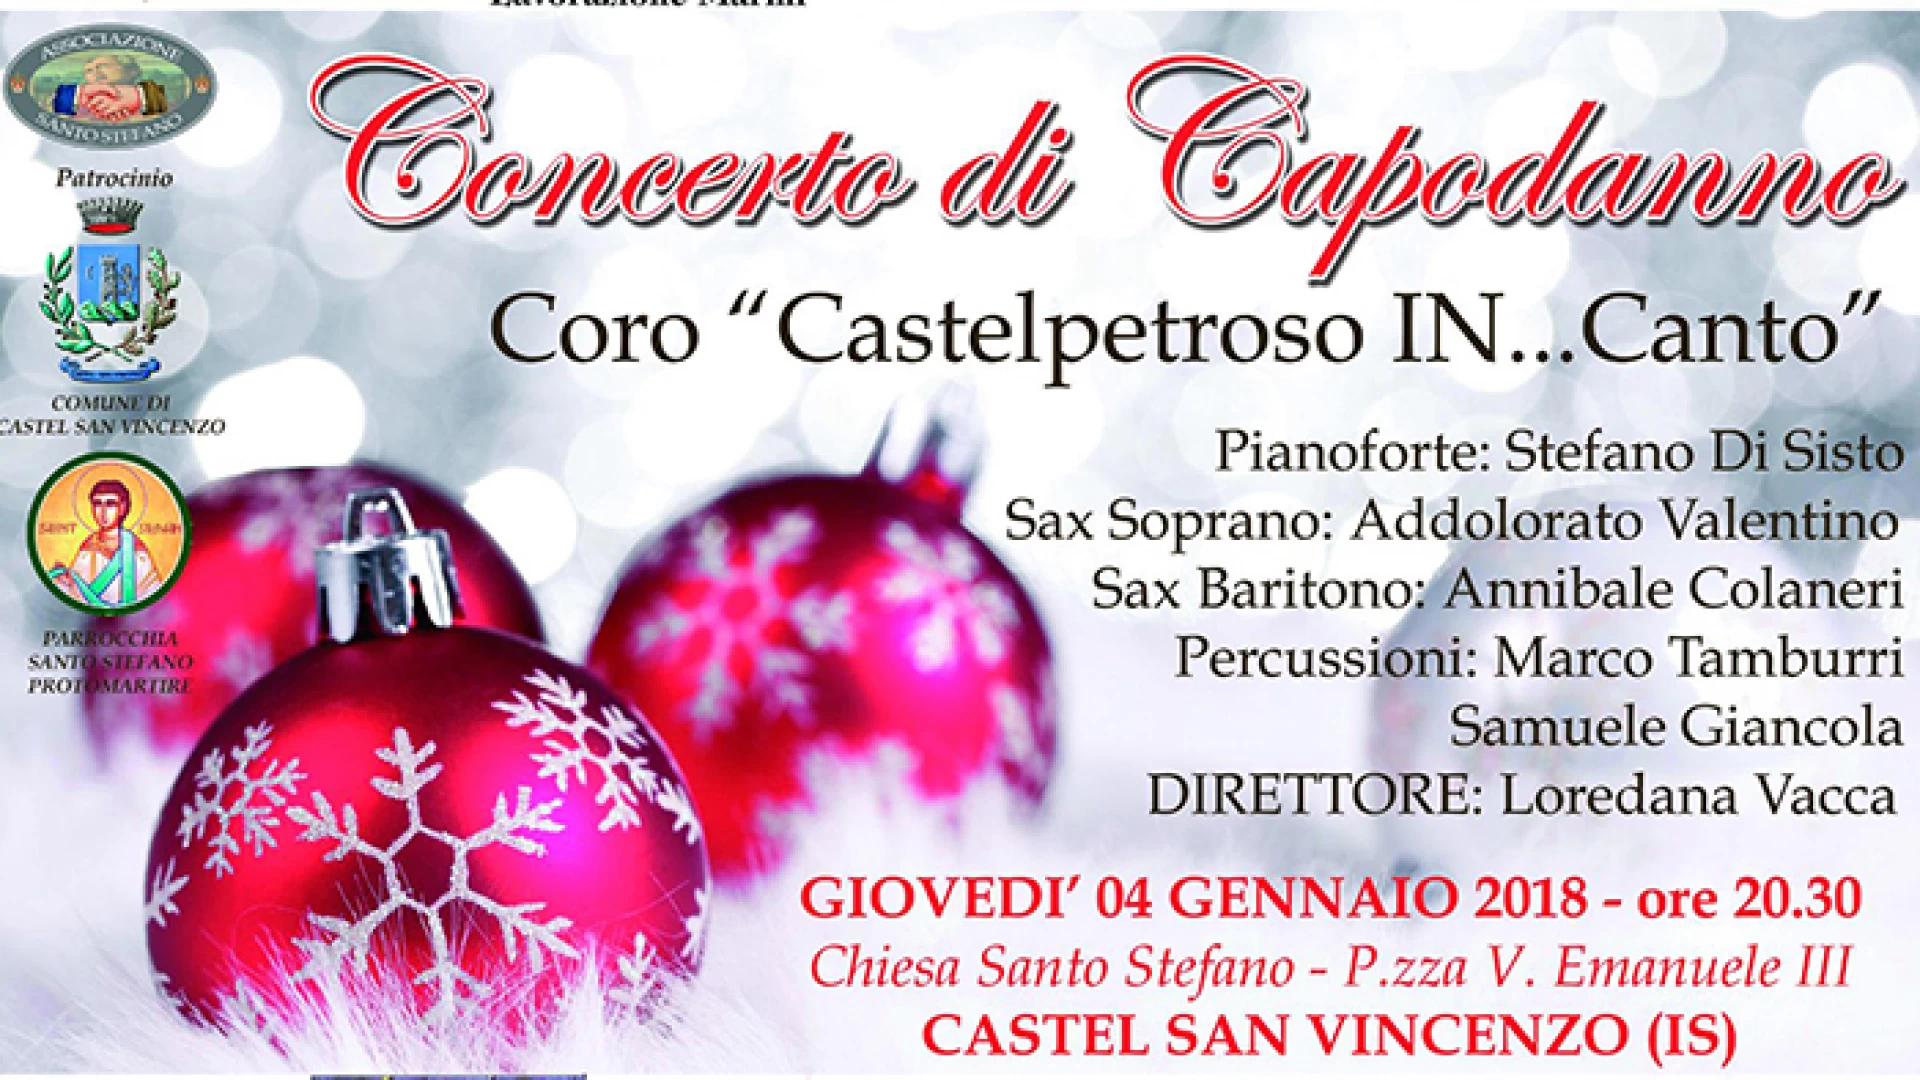 Castel San Vincenzo: questa sera l’atteso concerto di Capodanno. Evento patrocinato dall’Amministrazione Comunale e promosso dall’associazione Santo Stefano.